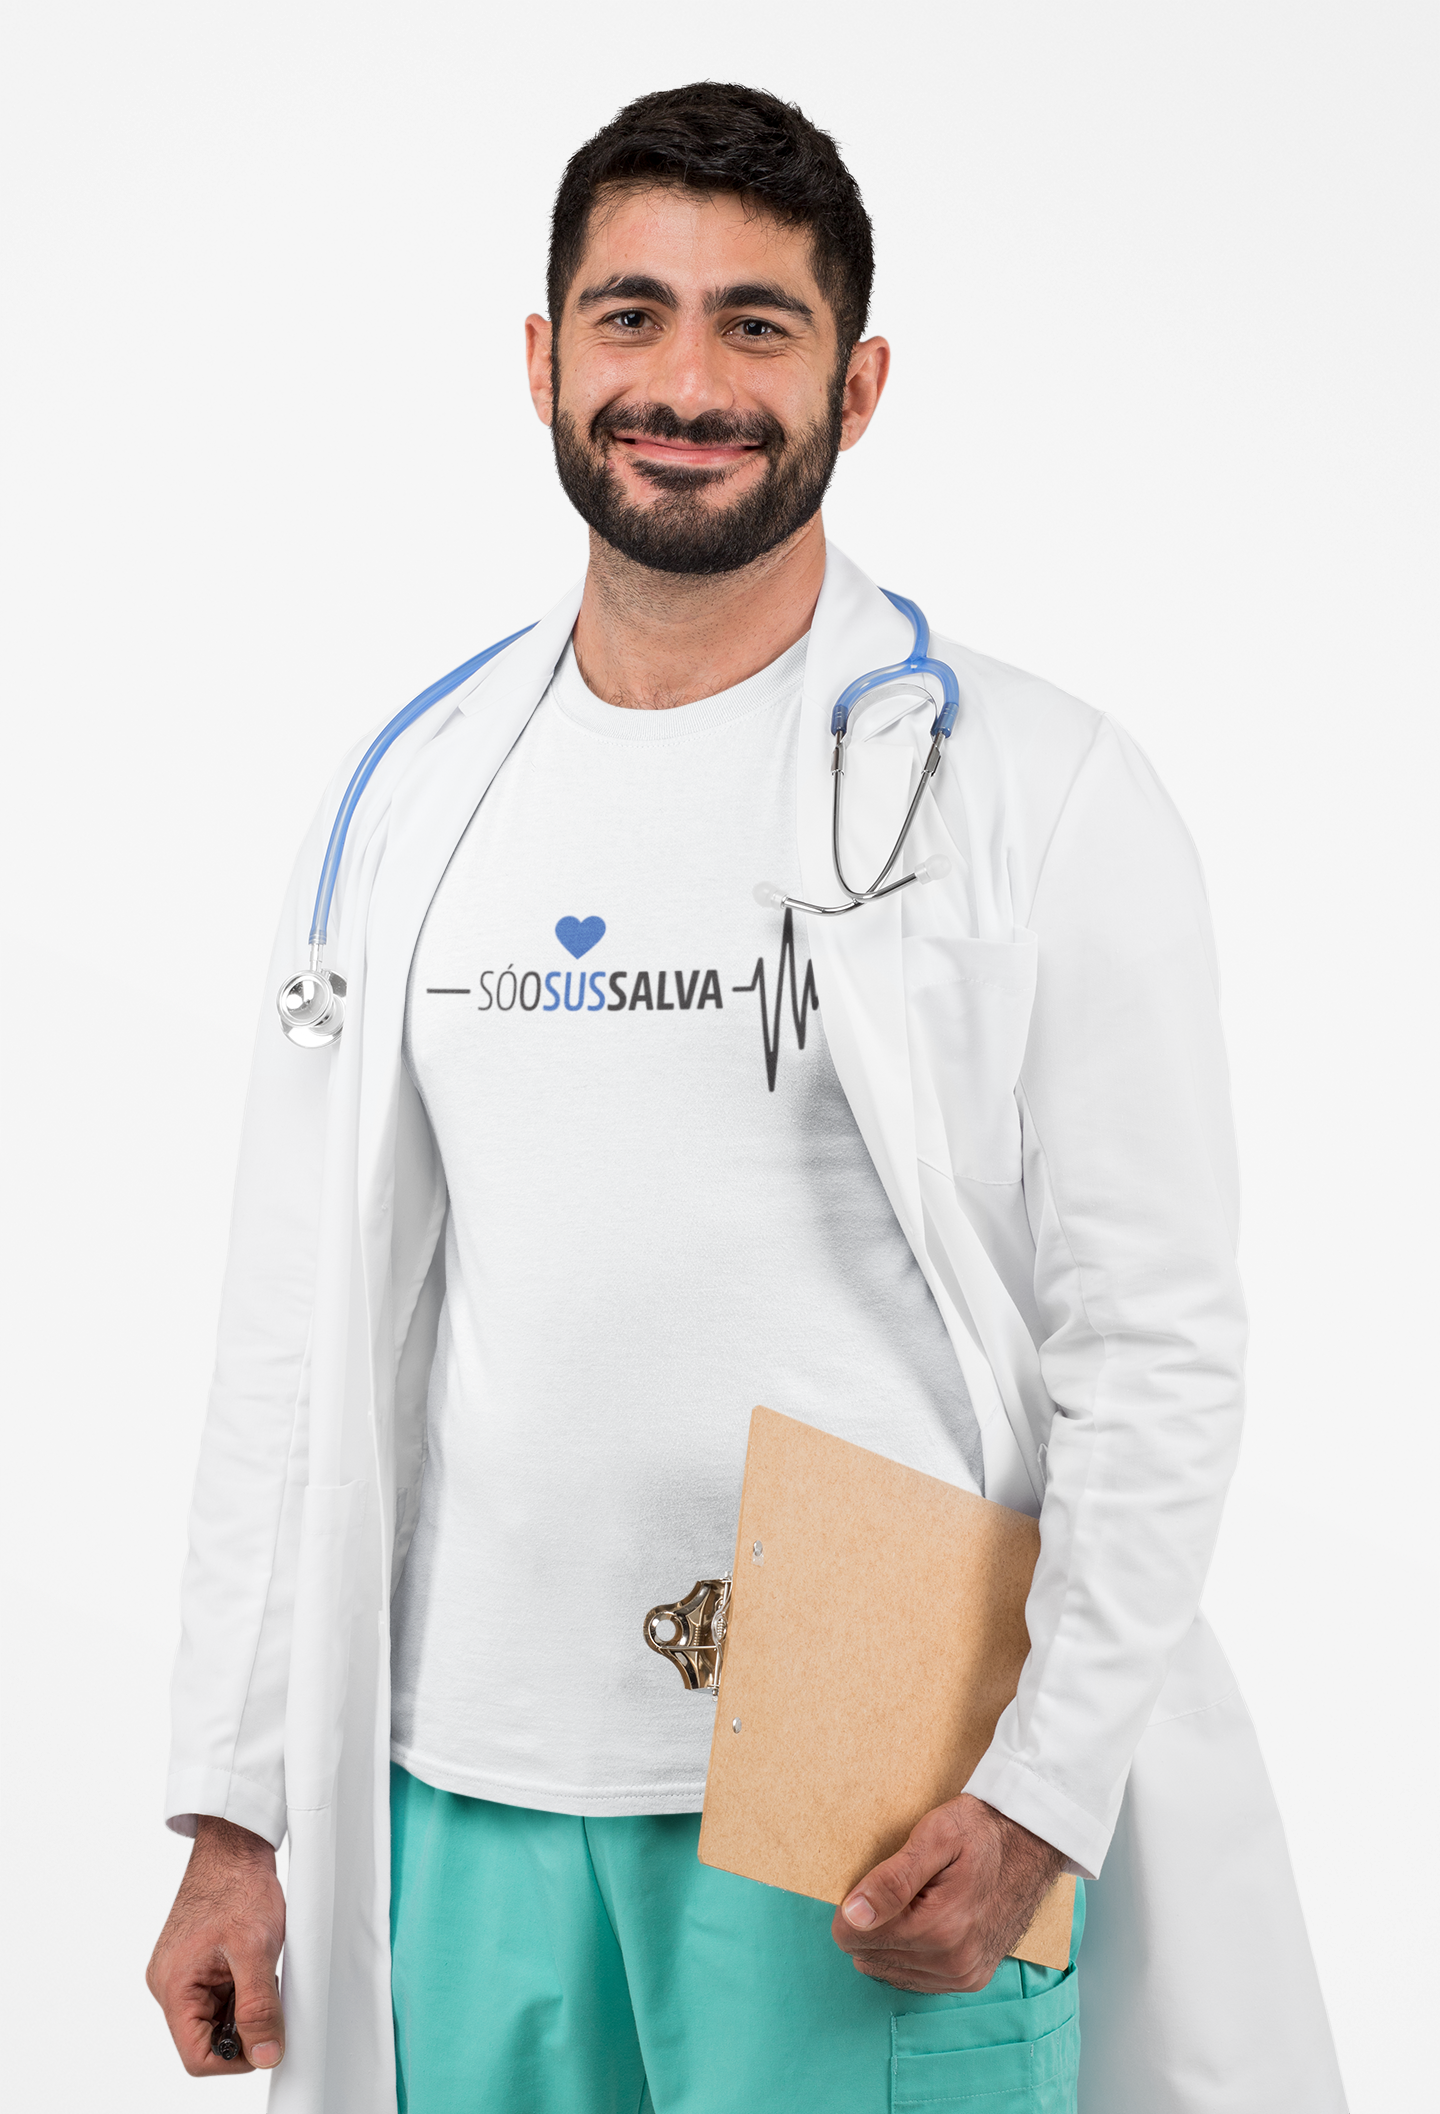 homem médico vestindo um jaleco e a camiseta masculina cor azul marinho com a ilustração de um coração e eletrocardiograma e a frase "Só o SUS salva"